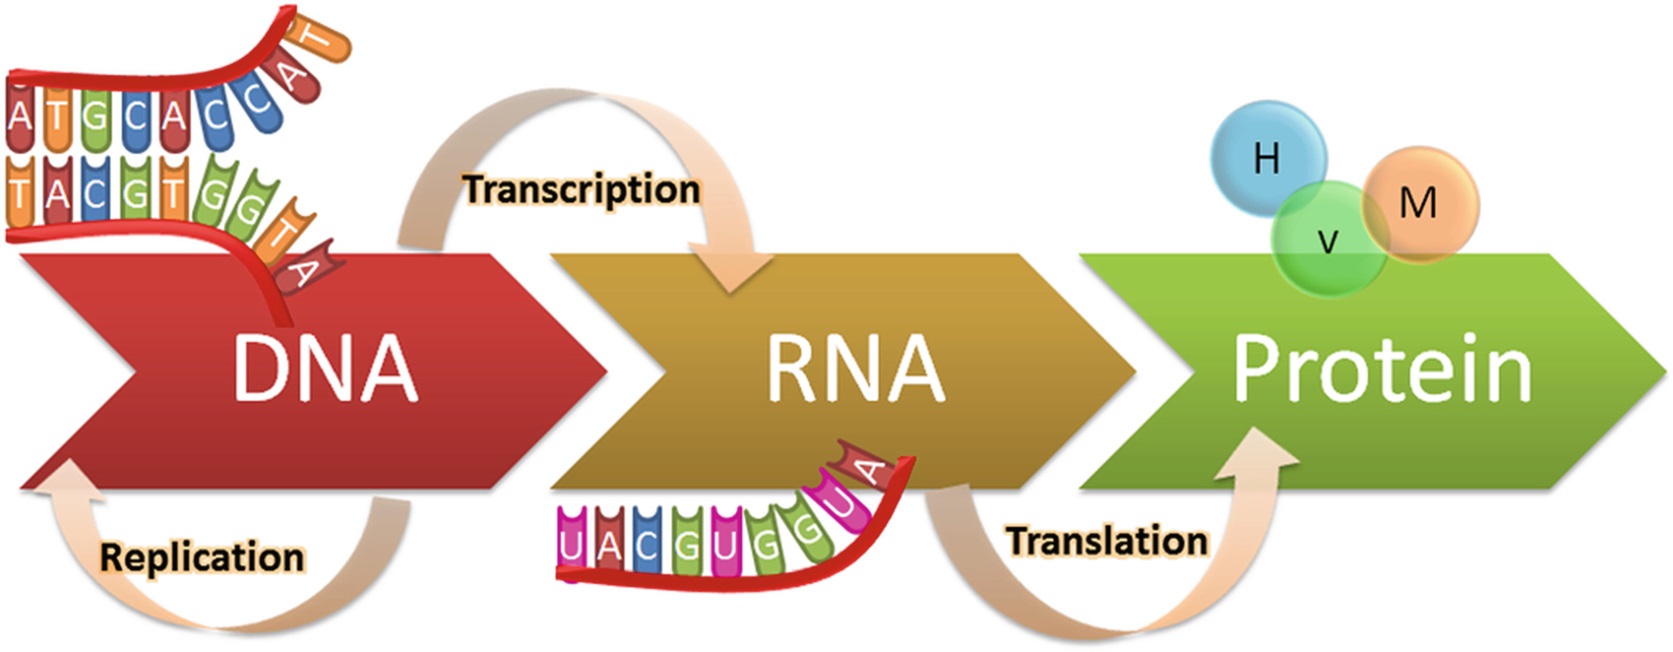 پروتئین سازی و ترجمه چیست؟ — به زبان ساده